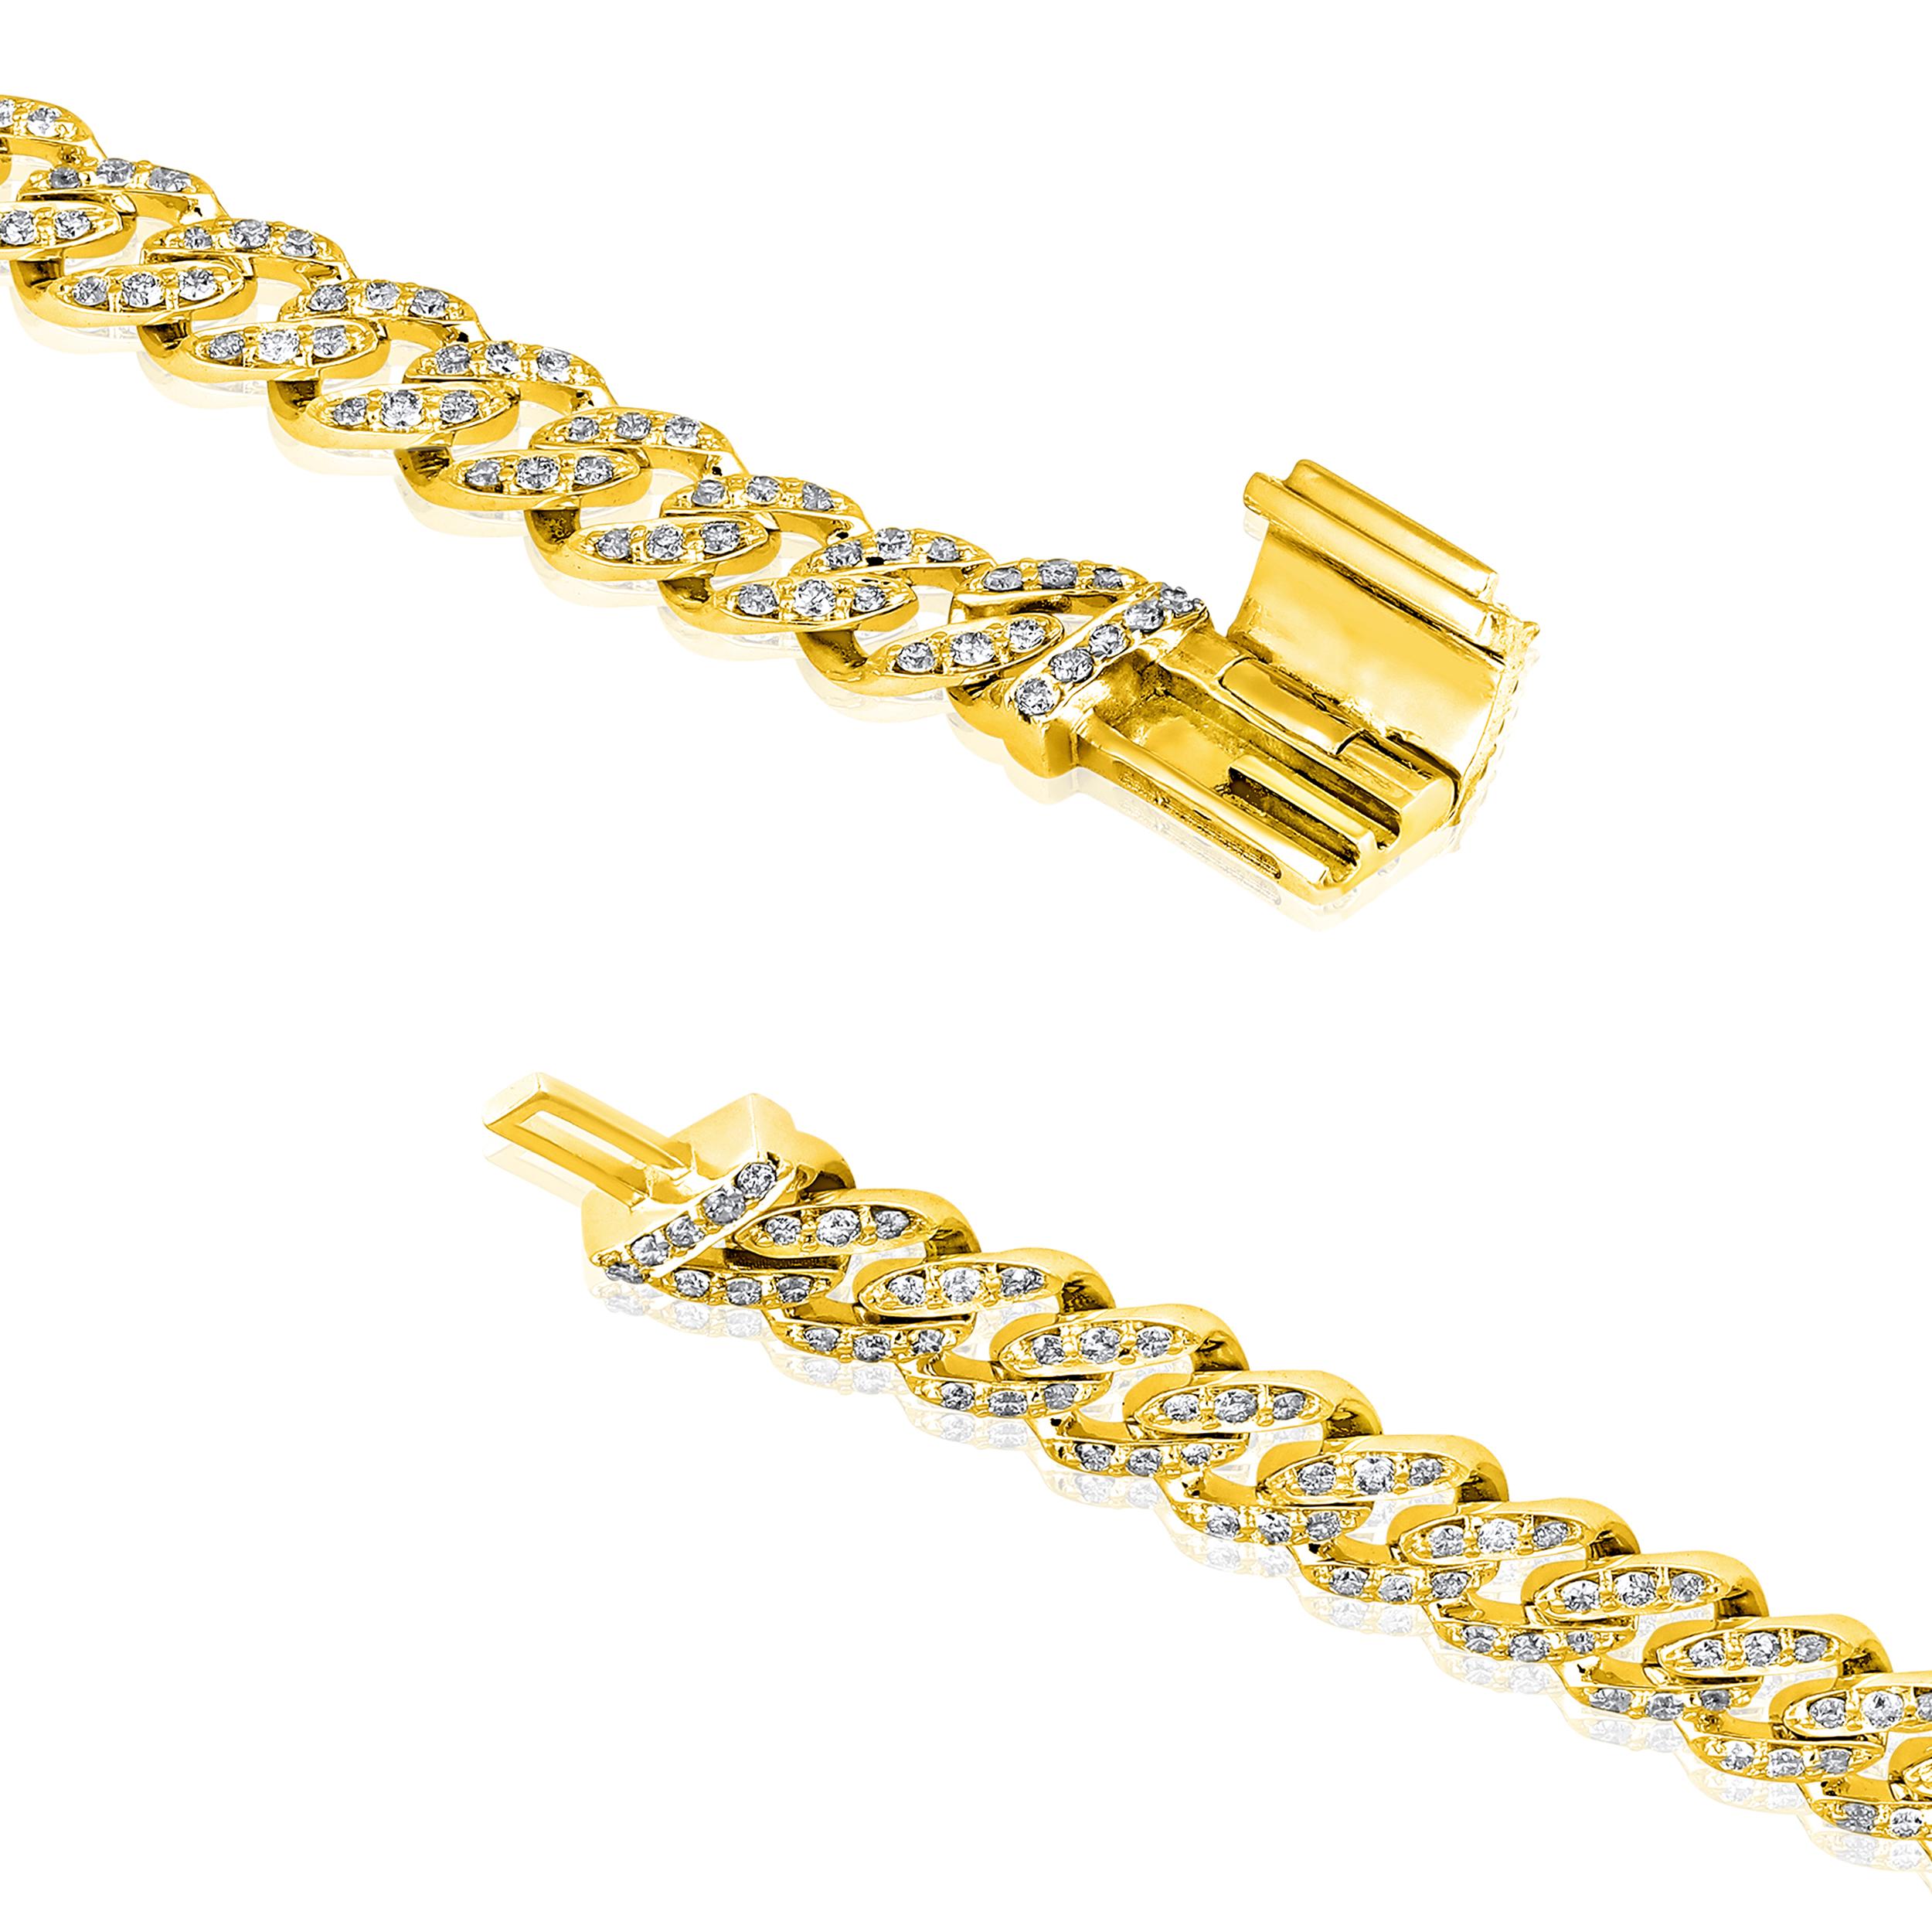 Fabriqué en or jaune 10K de 7,39 grammes, le bracelet contient 327 pierres de diamants ronds d'un total de 1,33 carat de couleur F-G et de carat I1-I2. La longueur du bracelet est de 7 pouces.

UNE ESSENCE CONTEMPORAINE ET INTEMPORELLE : Fabriqué en